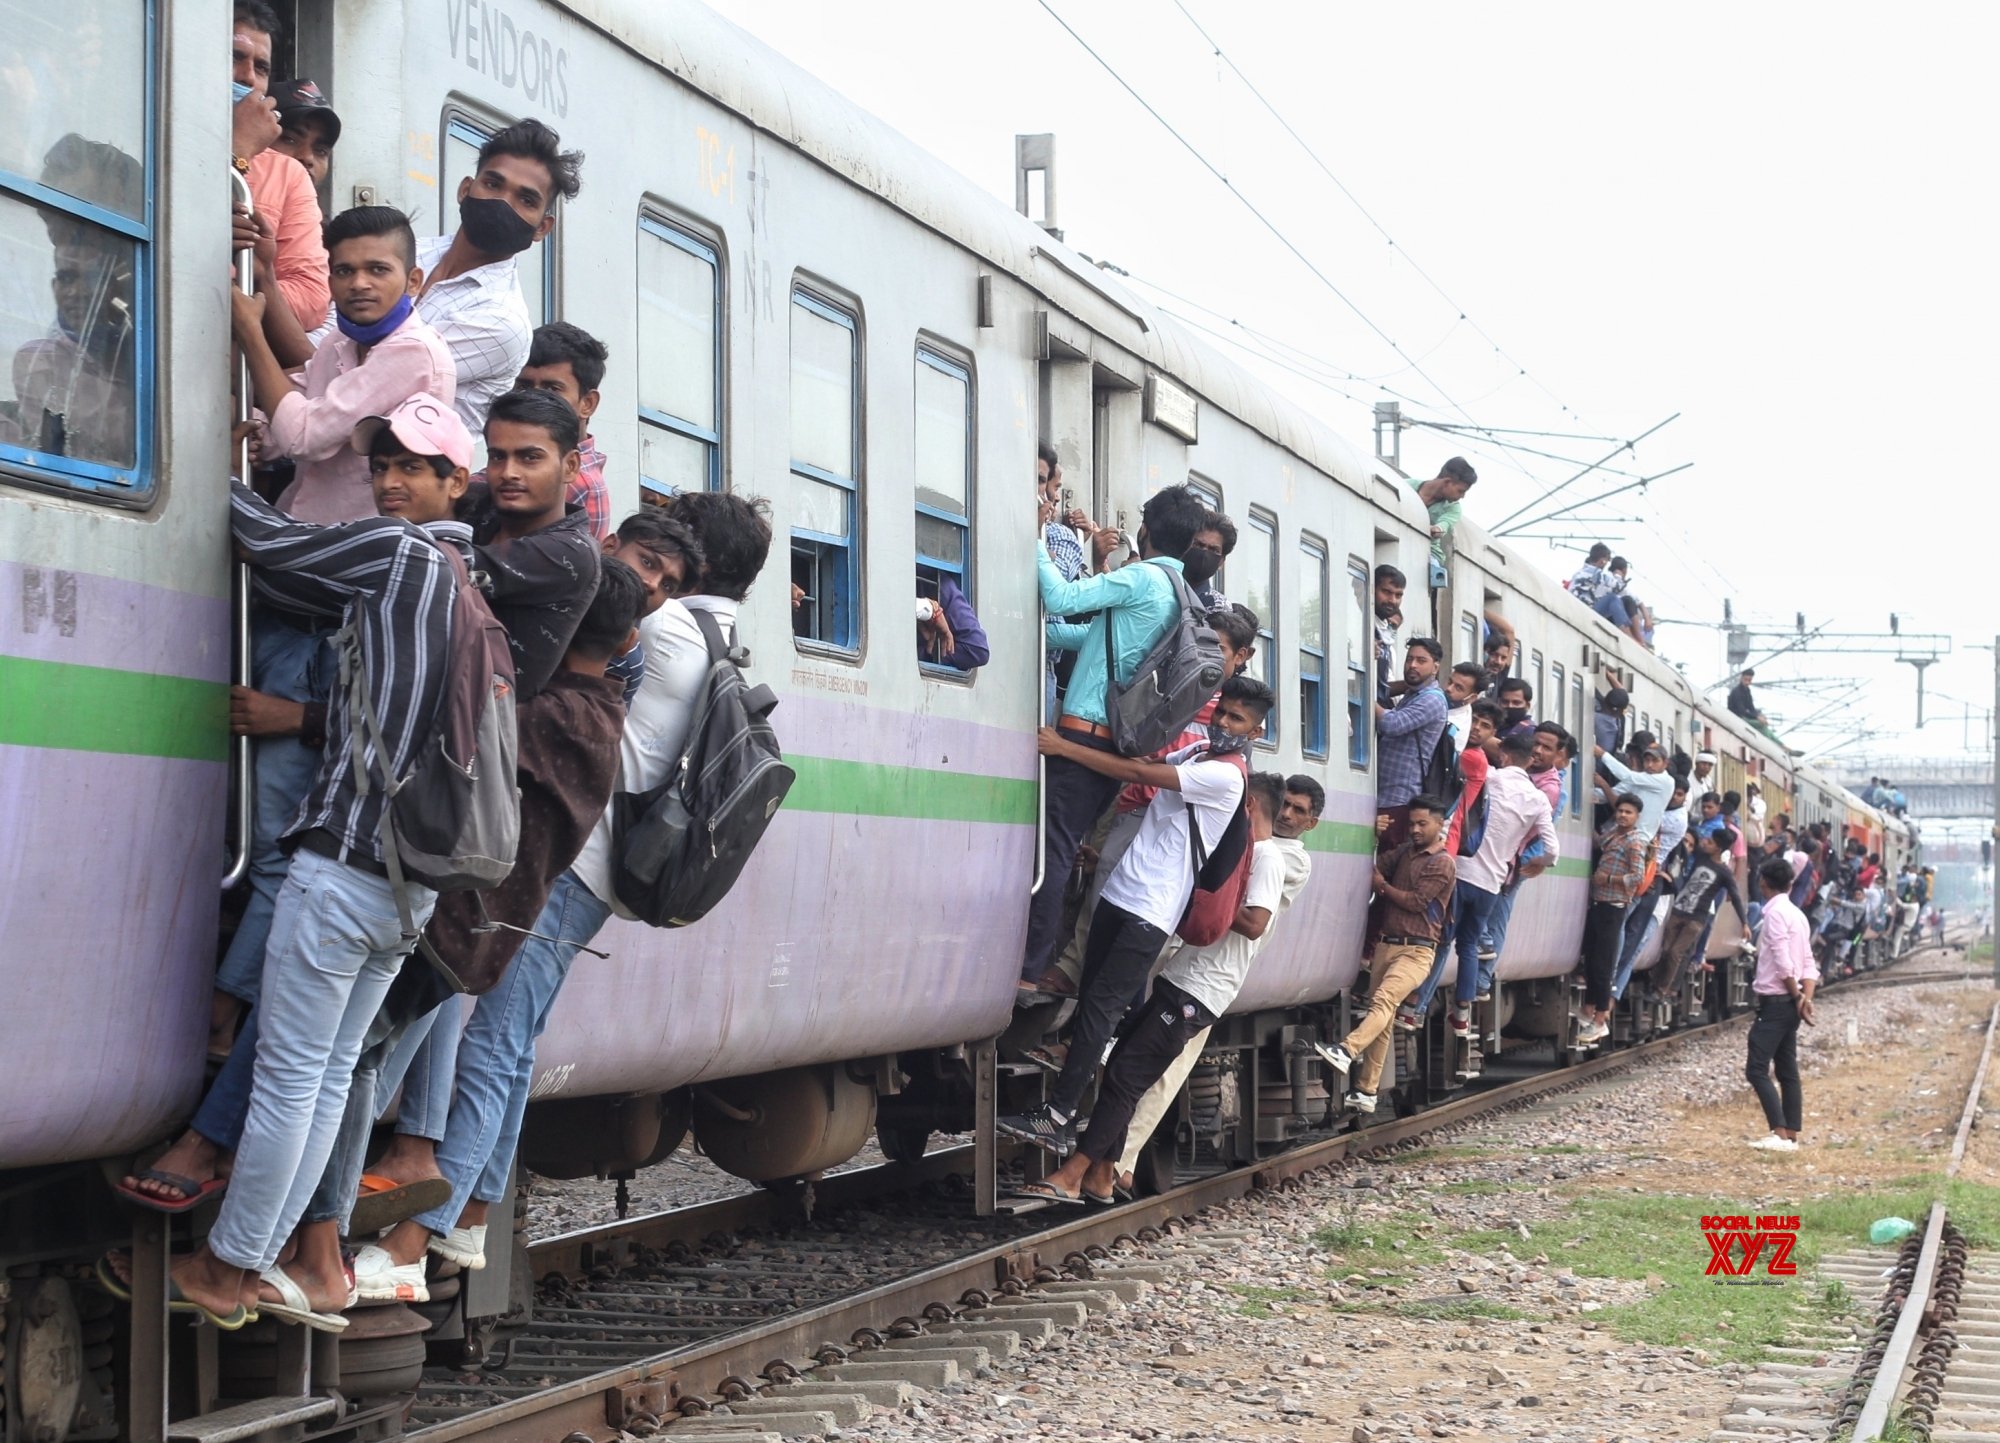 Γκαζιαμπάντ- Ινδία: Οι άνθρωποι προσκολλώνται σε ένα γεμάτο τρένο καθώς φεύγουν από το σταθμό Noli. Εικόνες. - Φωτογραφία 5